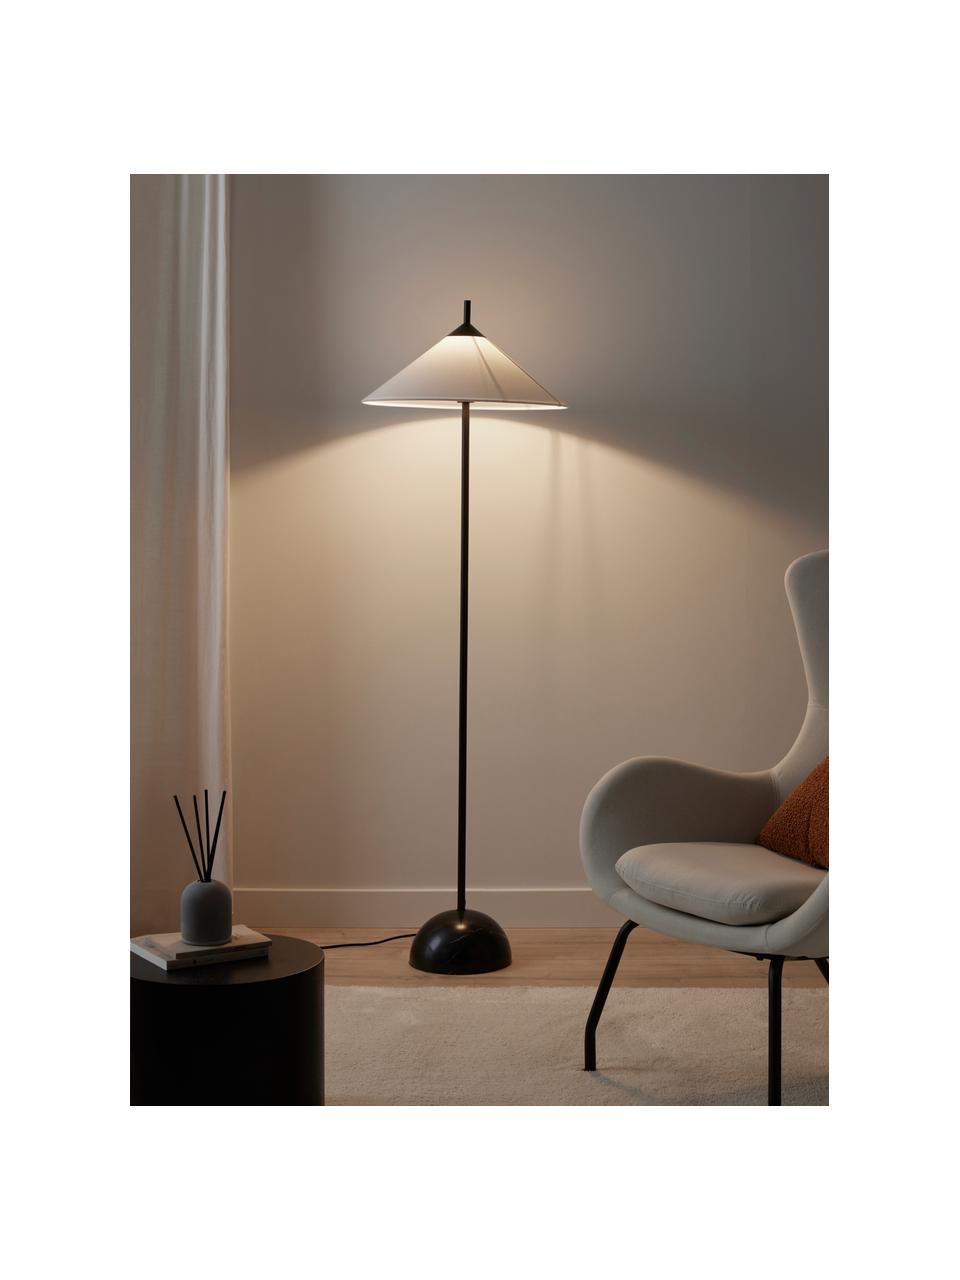 Vloerlamp Vica met marmeren voet, Lampenkap: linnen (100% polyester), Lampvoet: gepoedercoat metaal, Wit, zwart, Ø 50 x H 160 cm